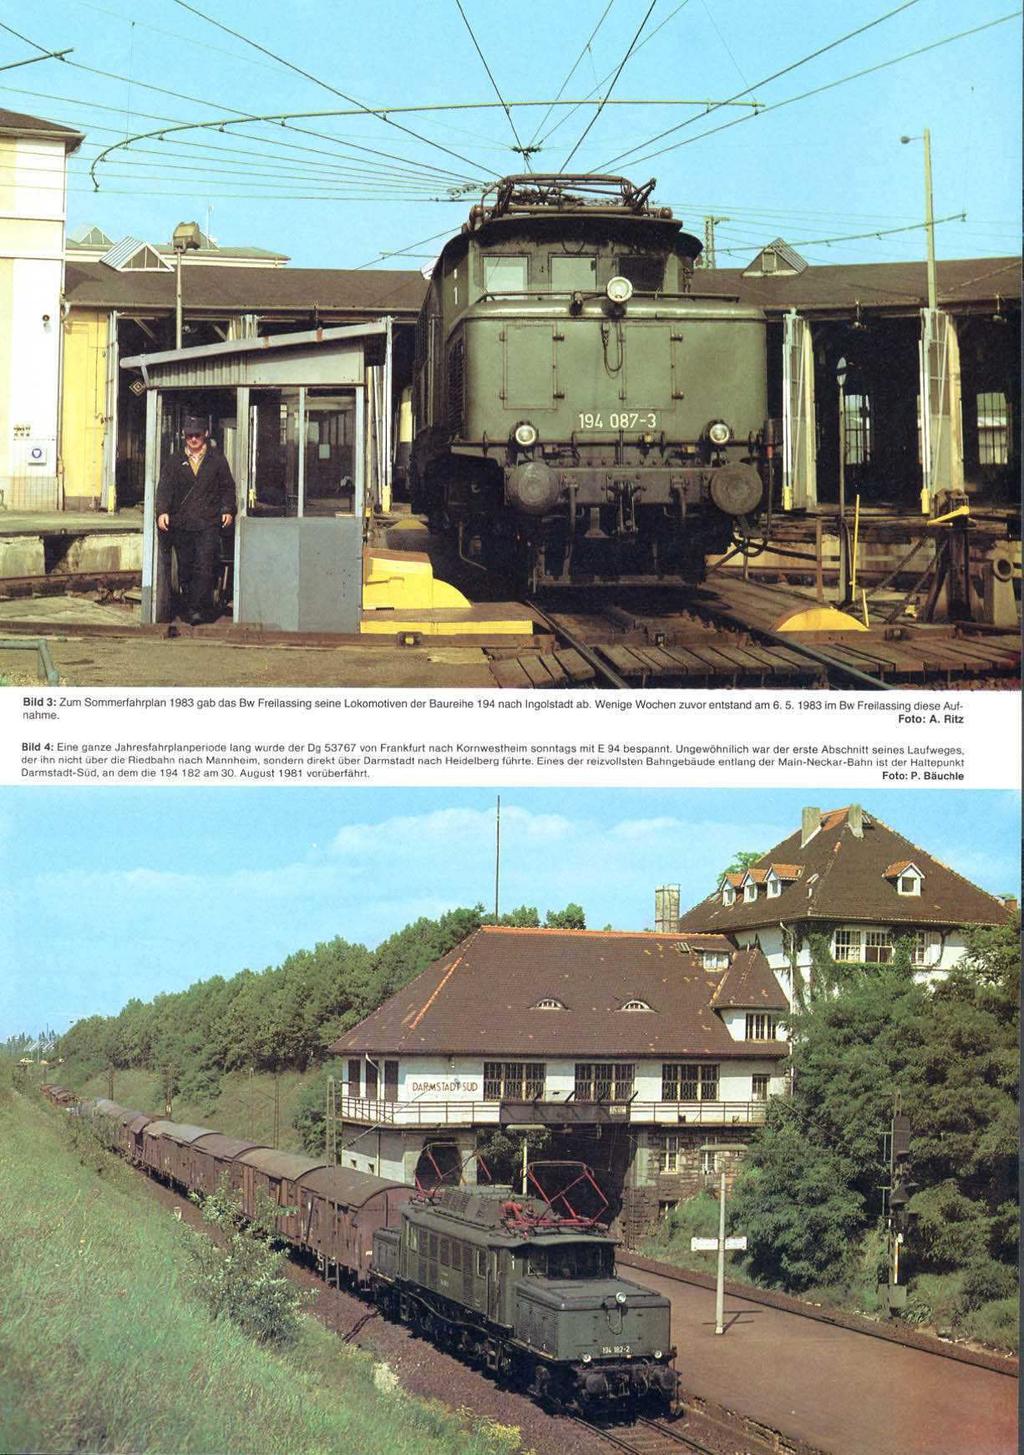 Bild 3: Zum Sommerfahrplan 1983 gab das BW Freilassing seine Lokomotiven der Baureihe 194 nach Ingolstadt ab. Wenige Wochen zuvor entstand am 6. 5. 1963 im BW Frailassing diese Auf. nahme. Foto: A.